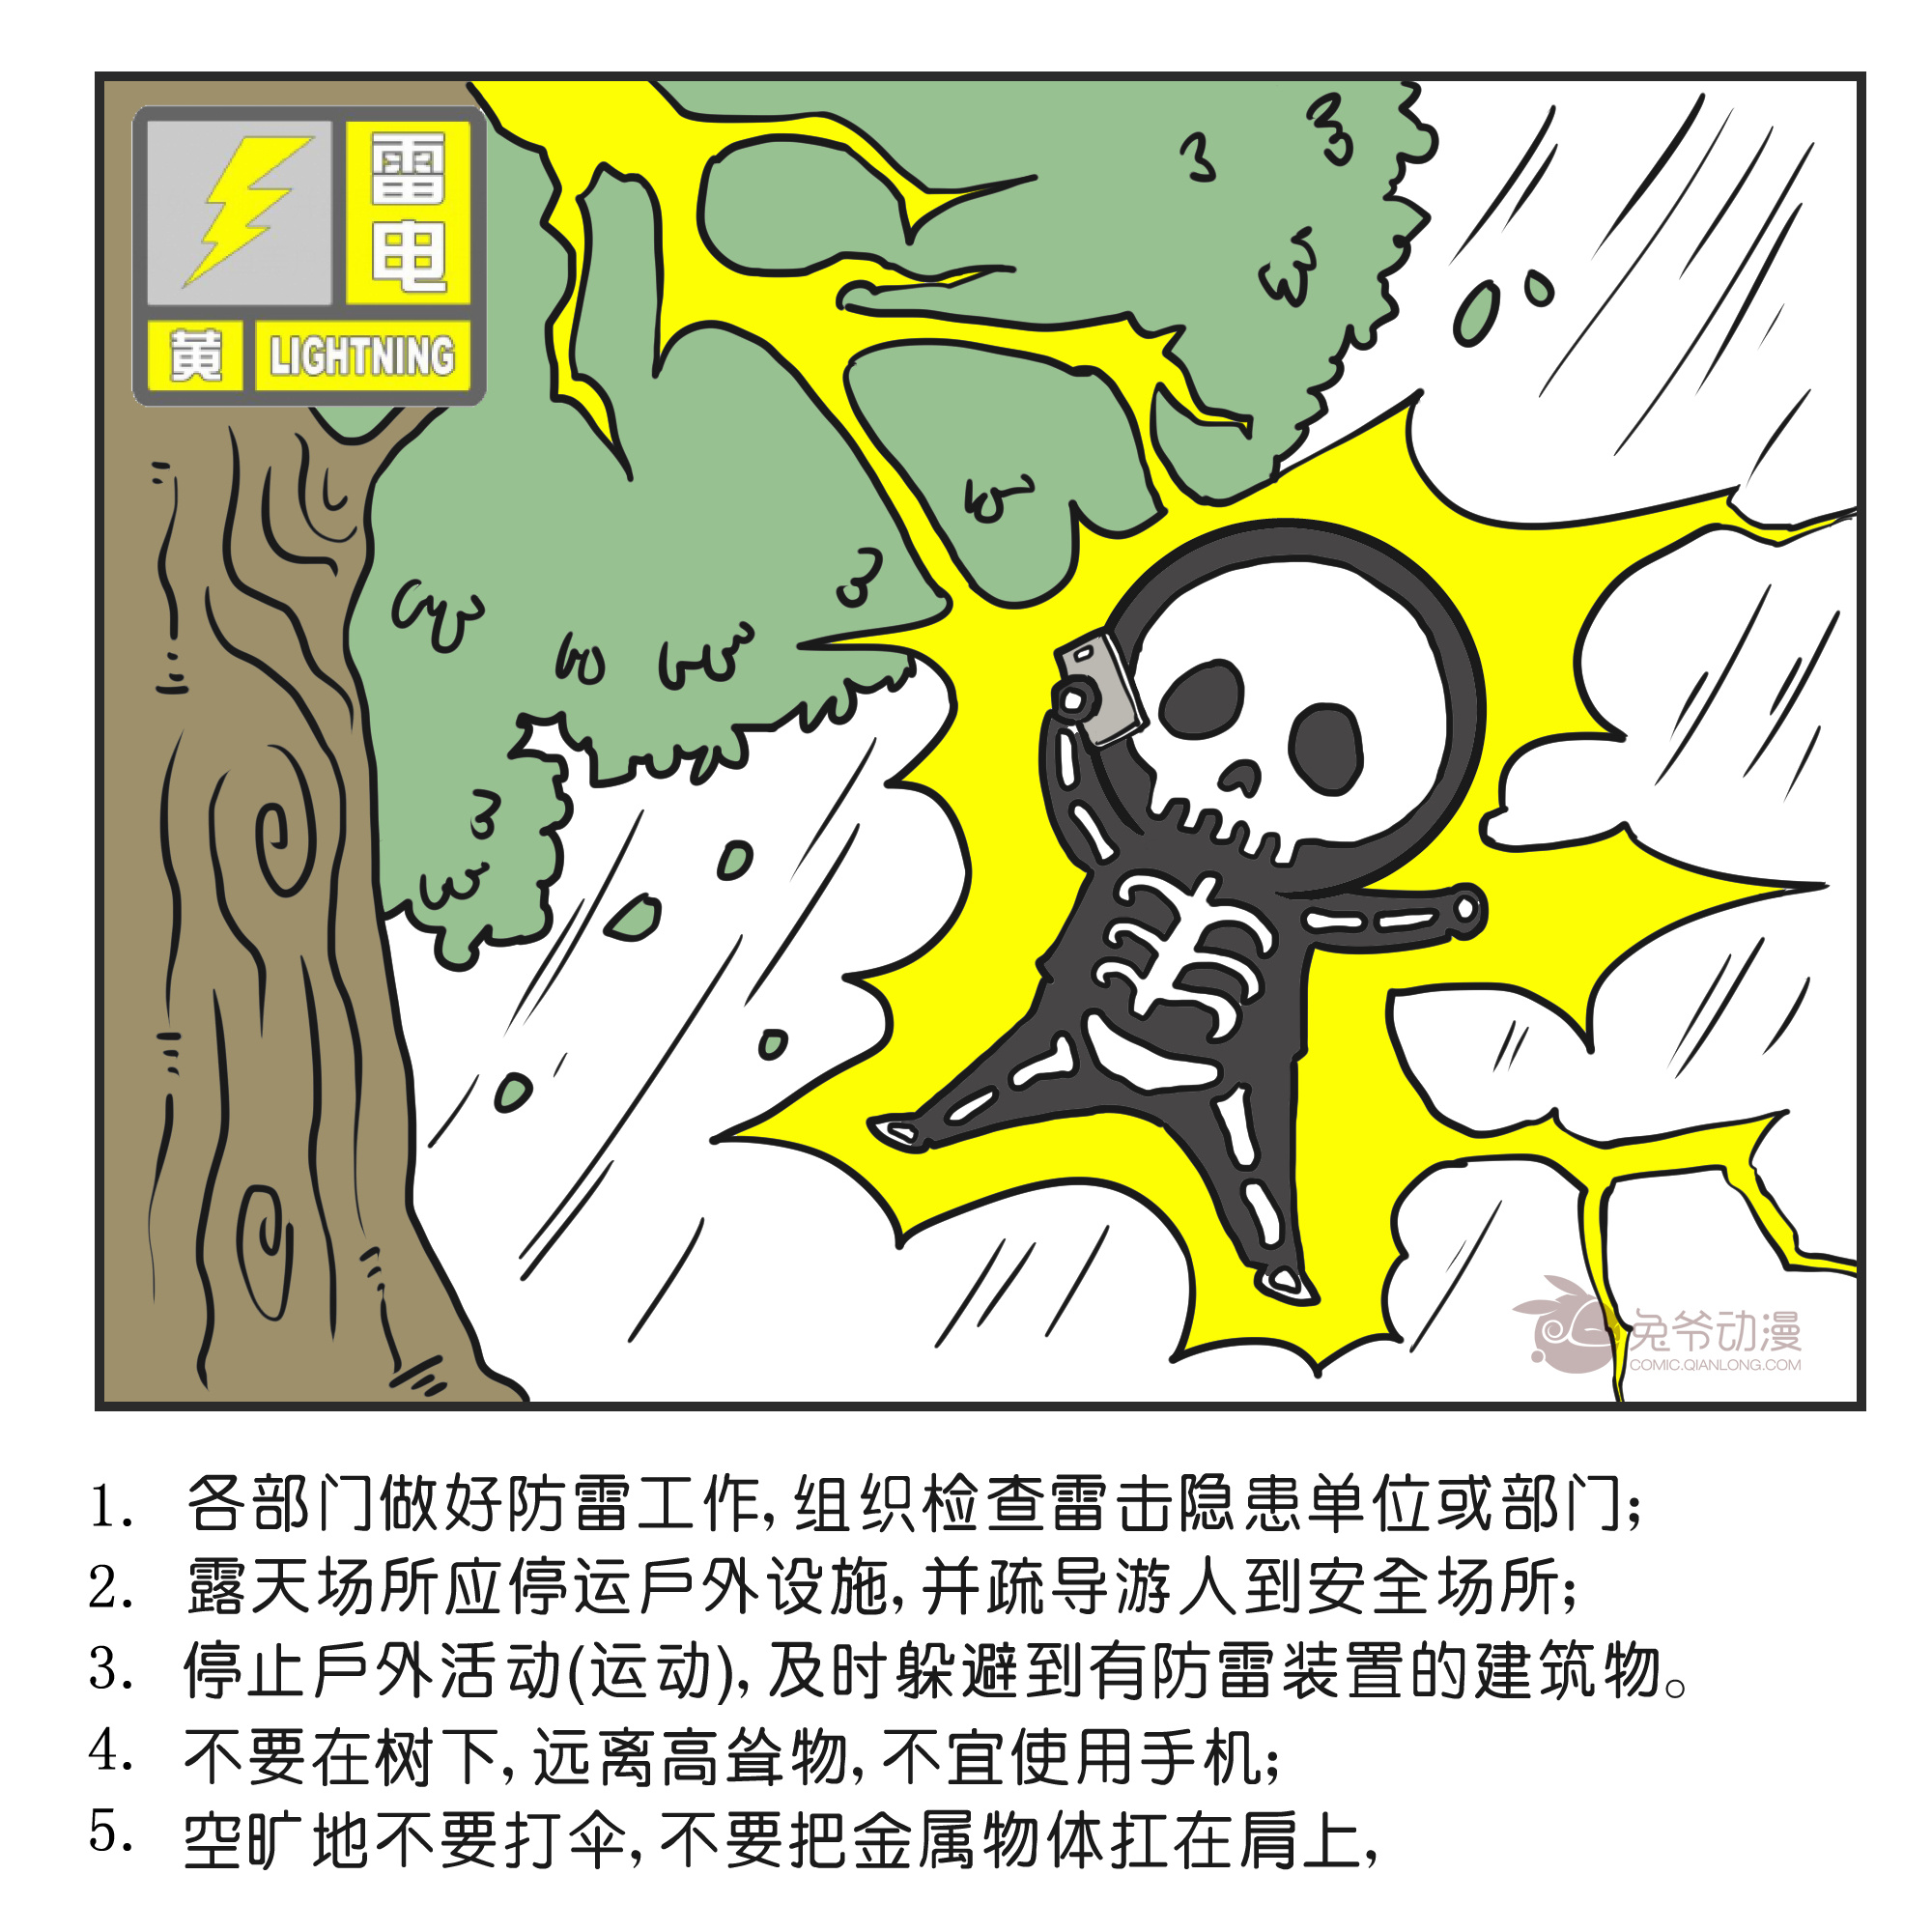 北京市2022年7月24日19时20分升级发布雷电黄色预警信号